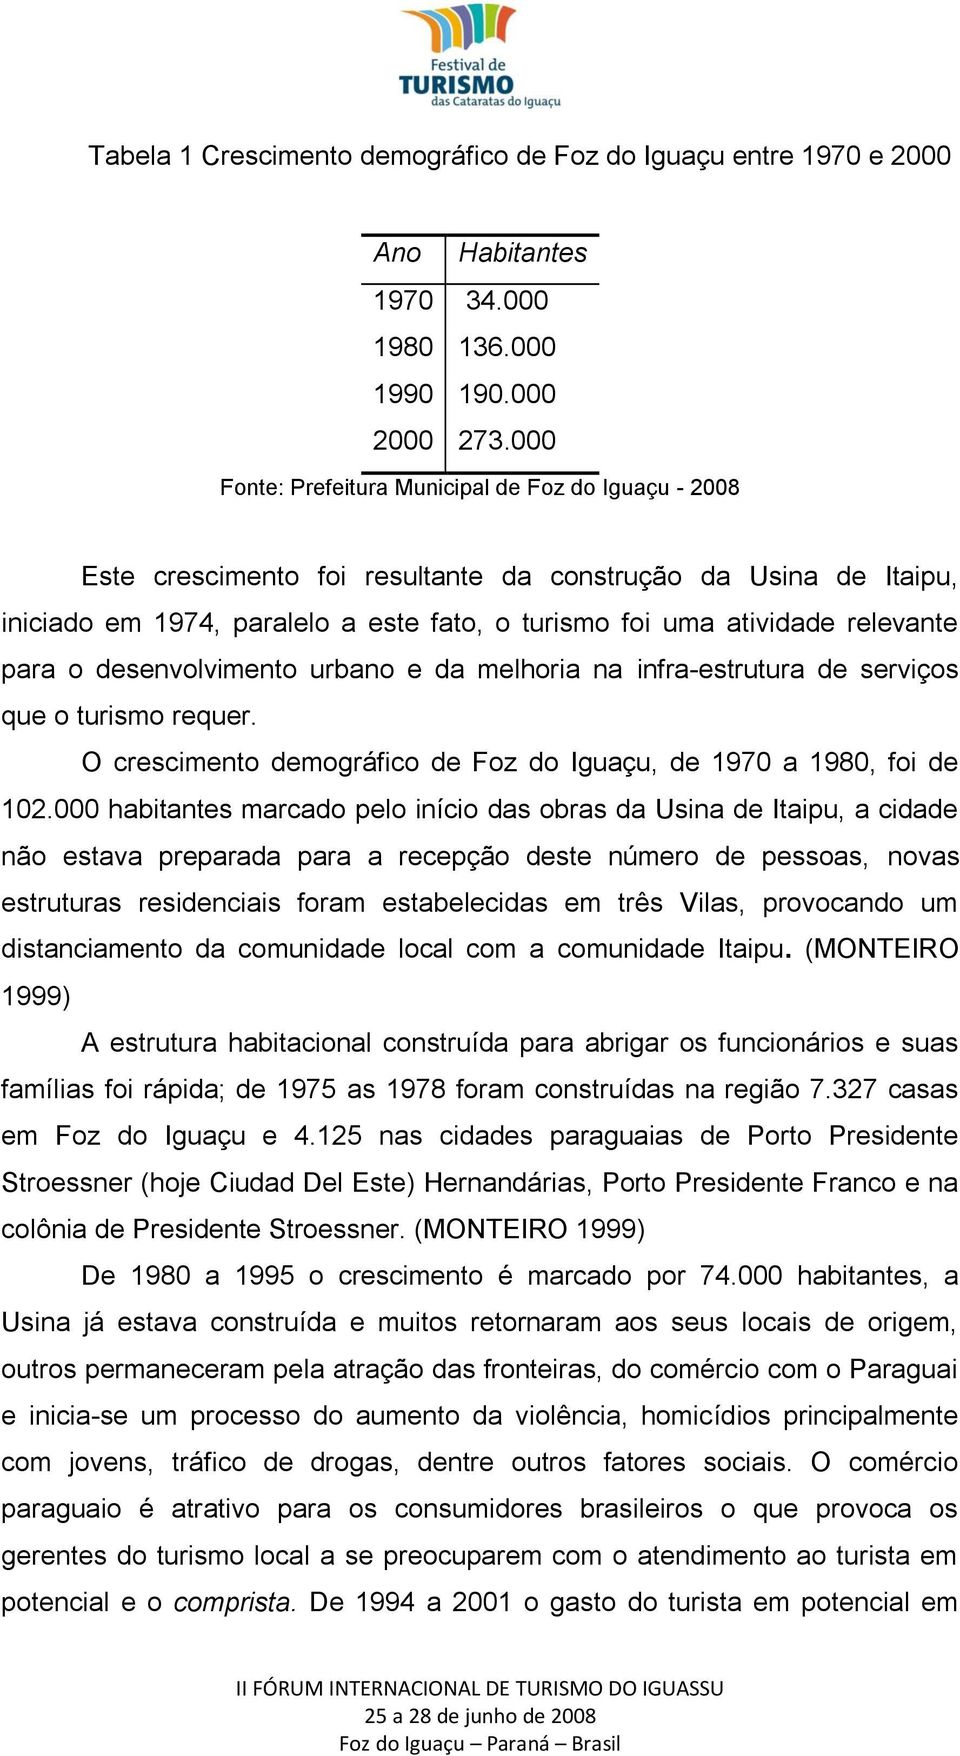 para o desenvolvimento urbano e da melhoria na infra-estrutura de serviços que o turismo requer. O crescimento demográfico de Foz do Iguaçu, de 1970 a 1980, foi de 102.